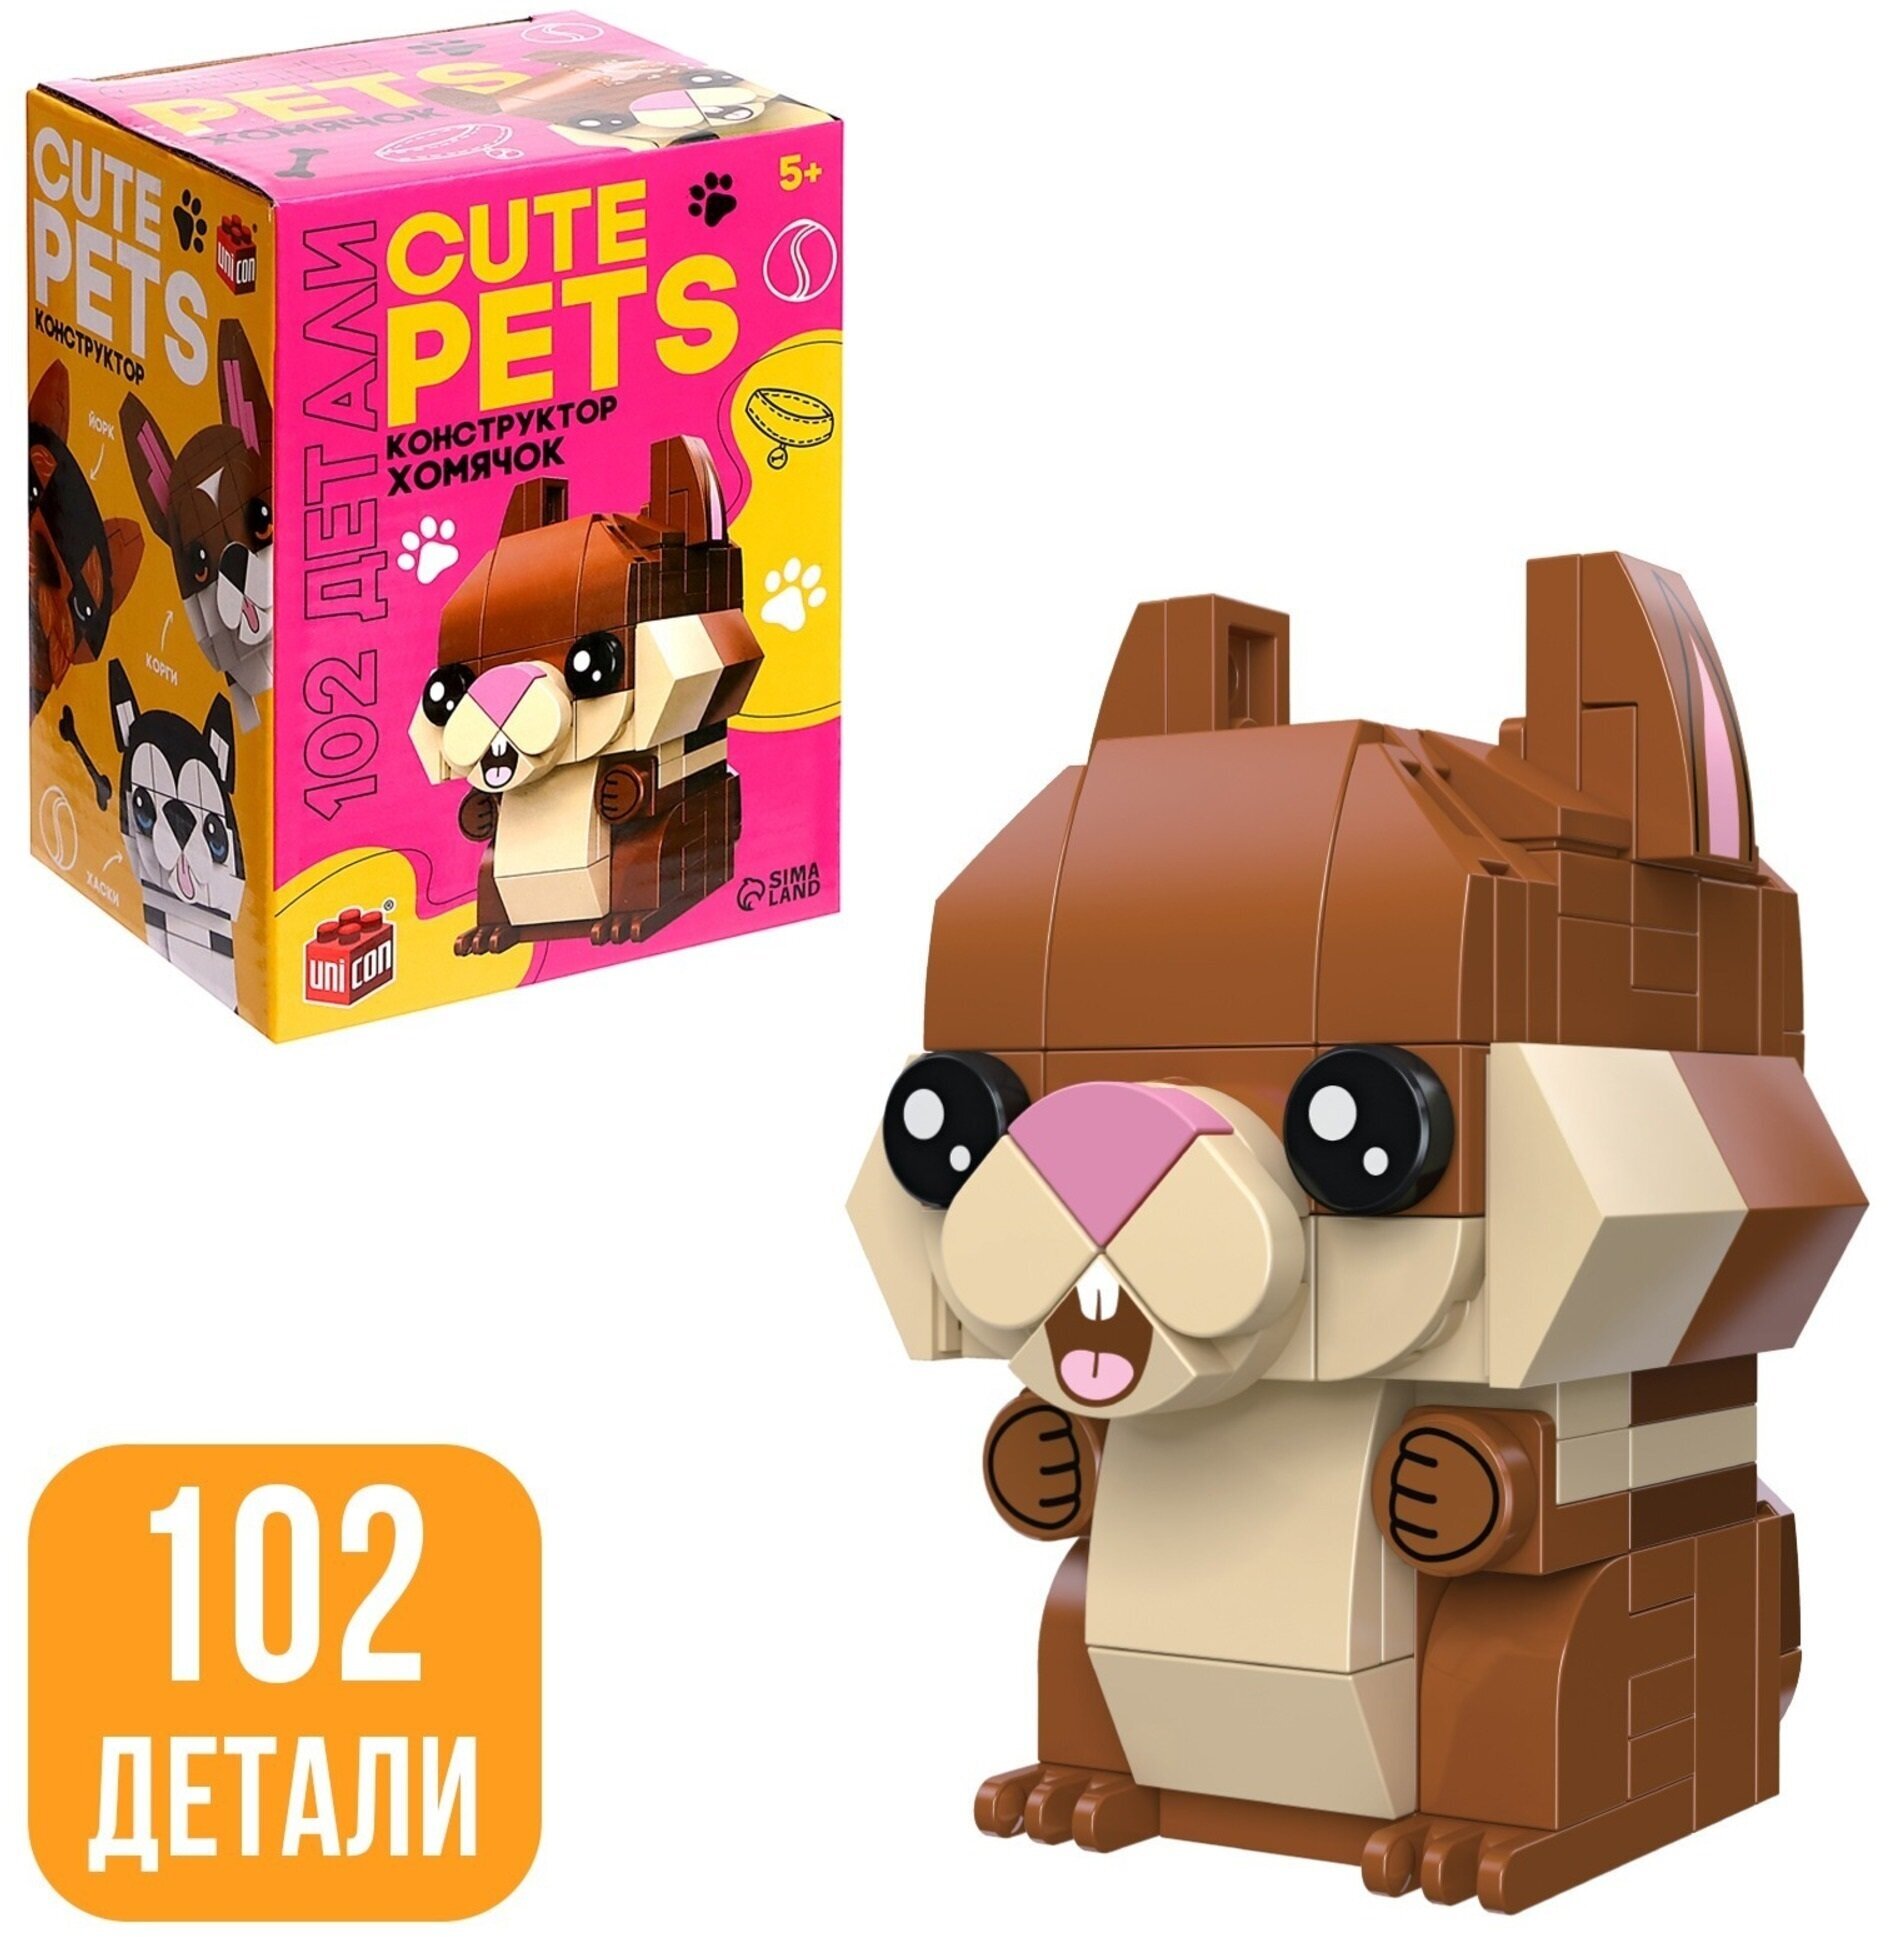 Детский блочный конструктор UNICON "Cute pets", Хомячок, 102 детали, для детей